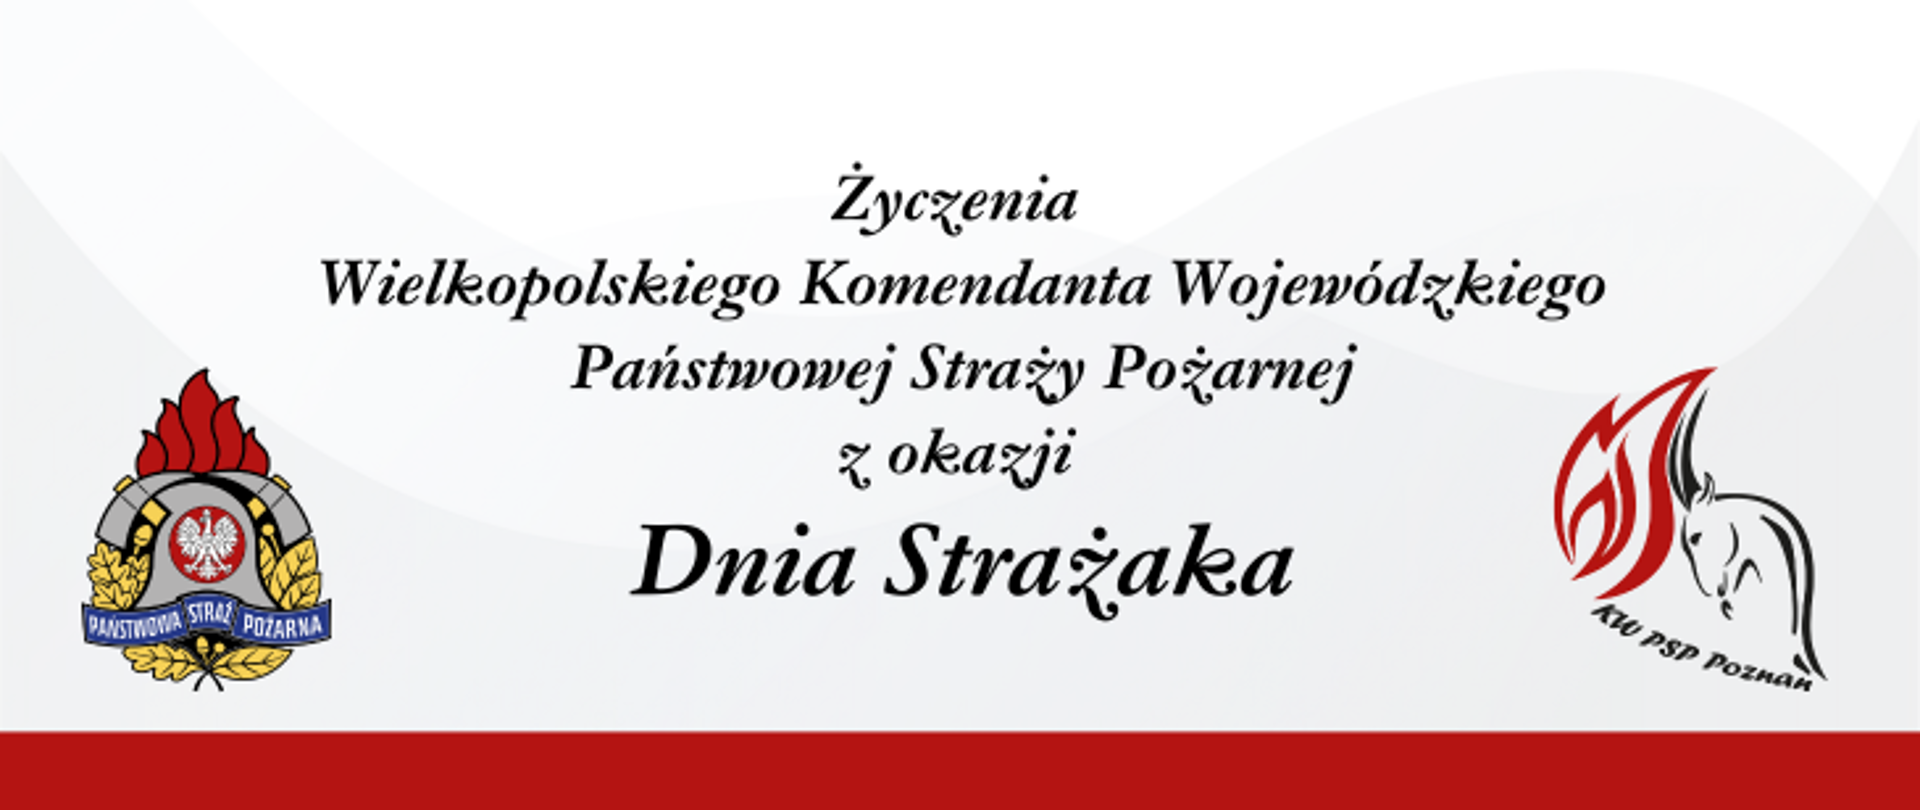 Życzenia Wielkopolskiego Komendanta Wojewódzkiego PSP z okazji Międzynarodowego Dnia Strażaka.